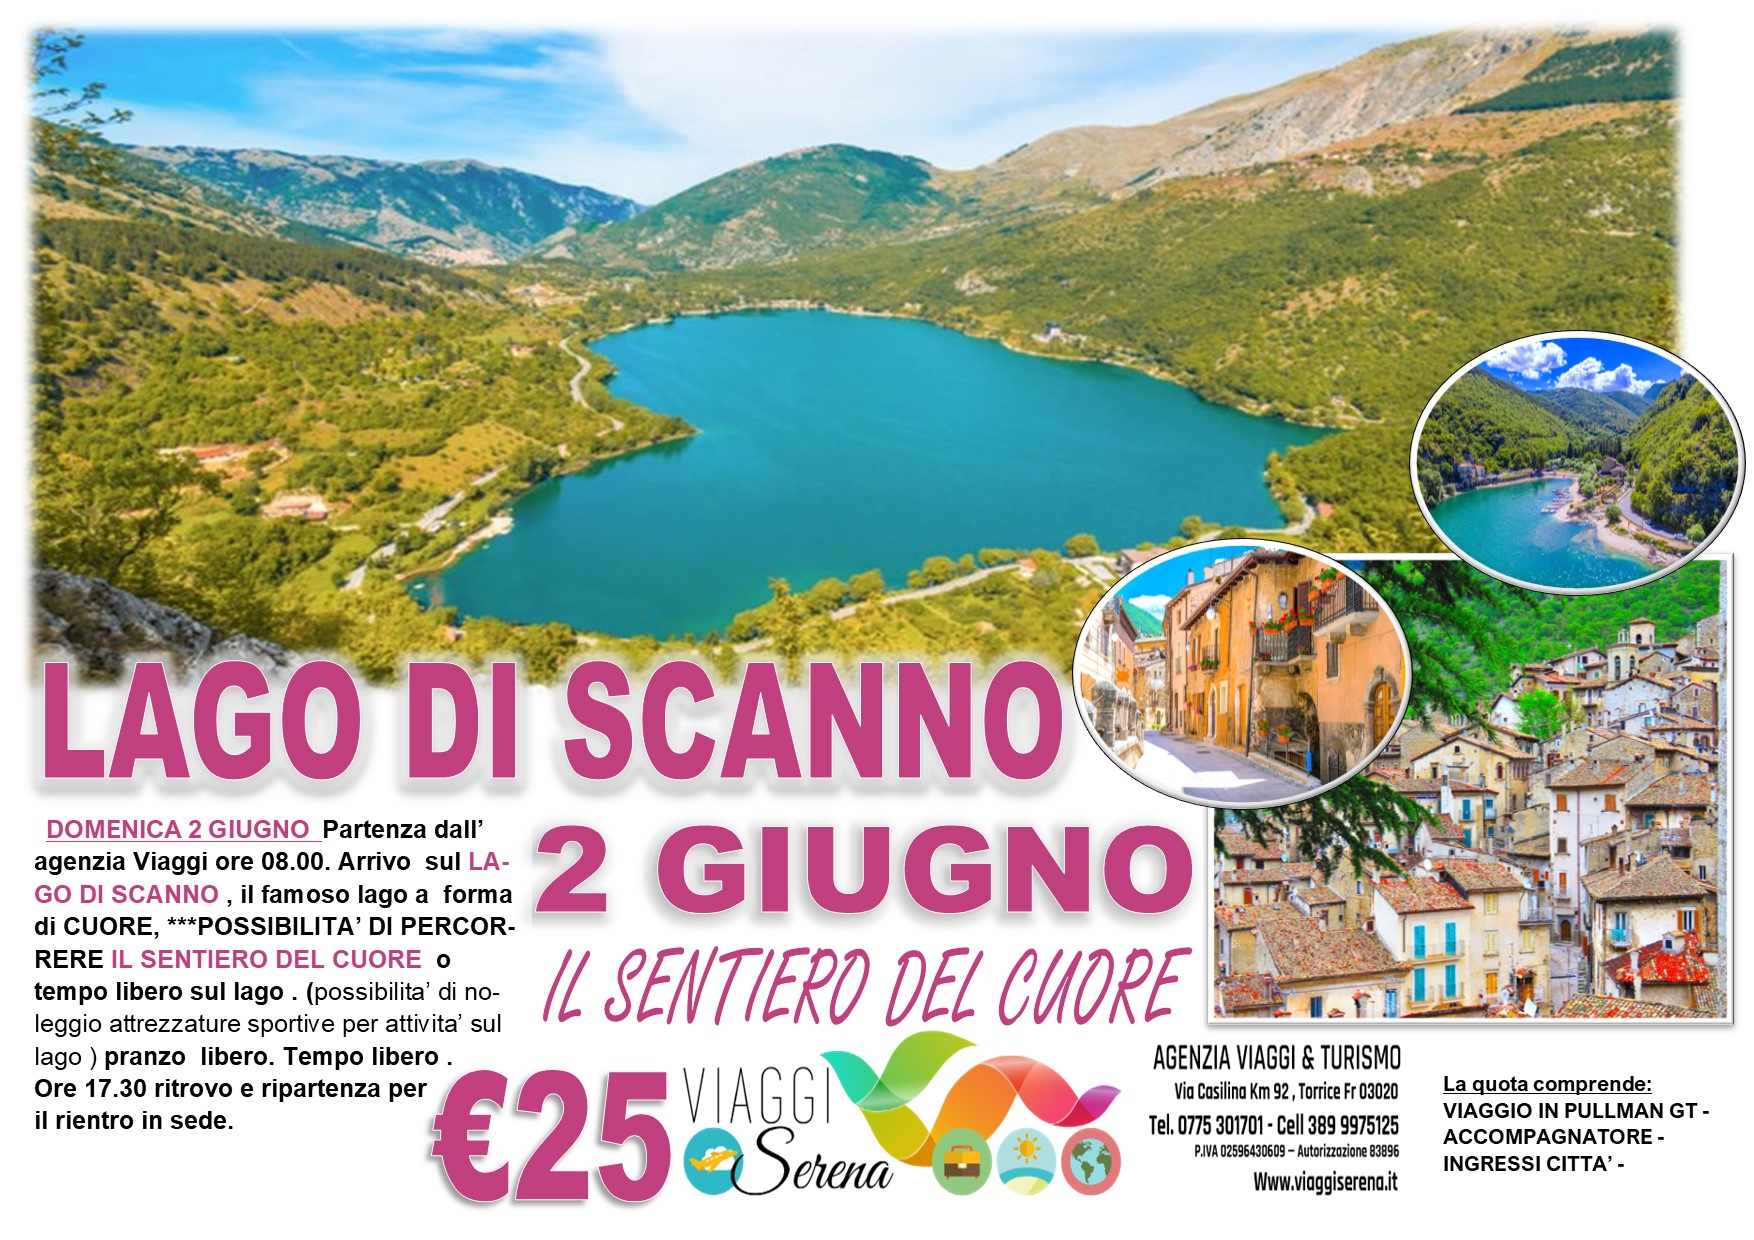 Viaggi di gruppo: Escursione Lago di SCANNO “Sentiero del Cuore” 2 Giugno € 25,00